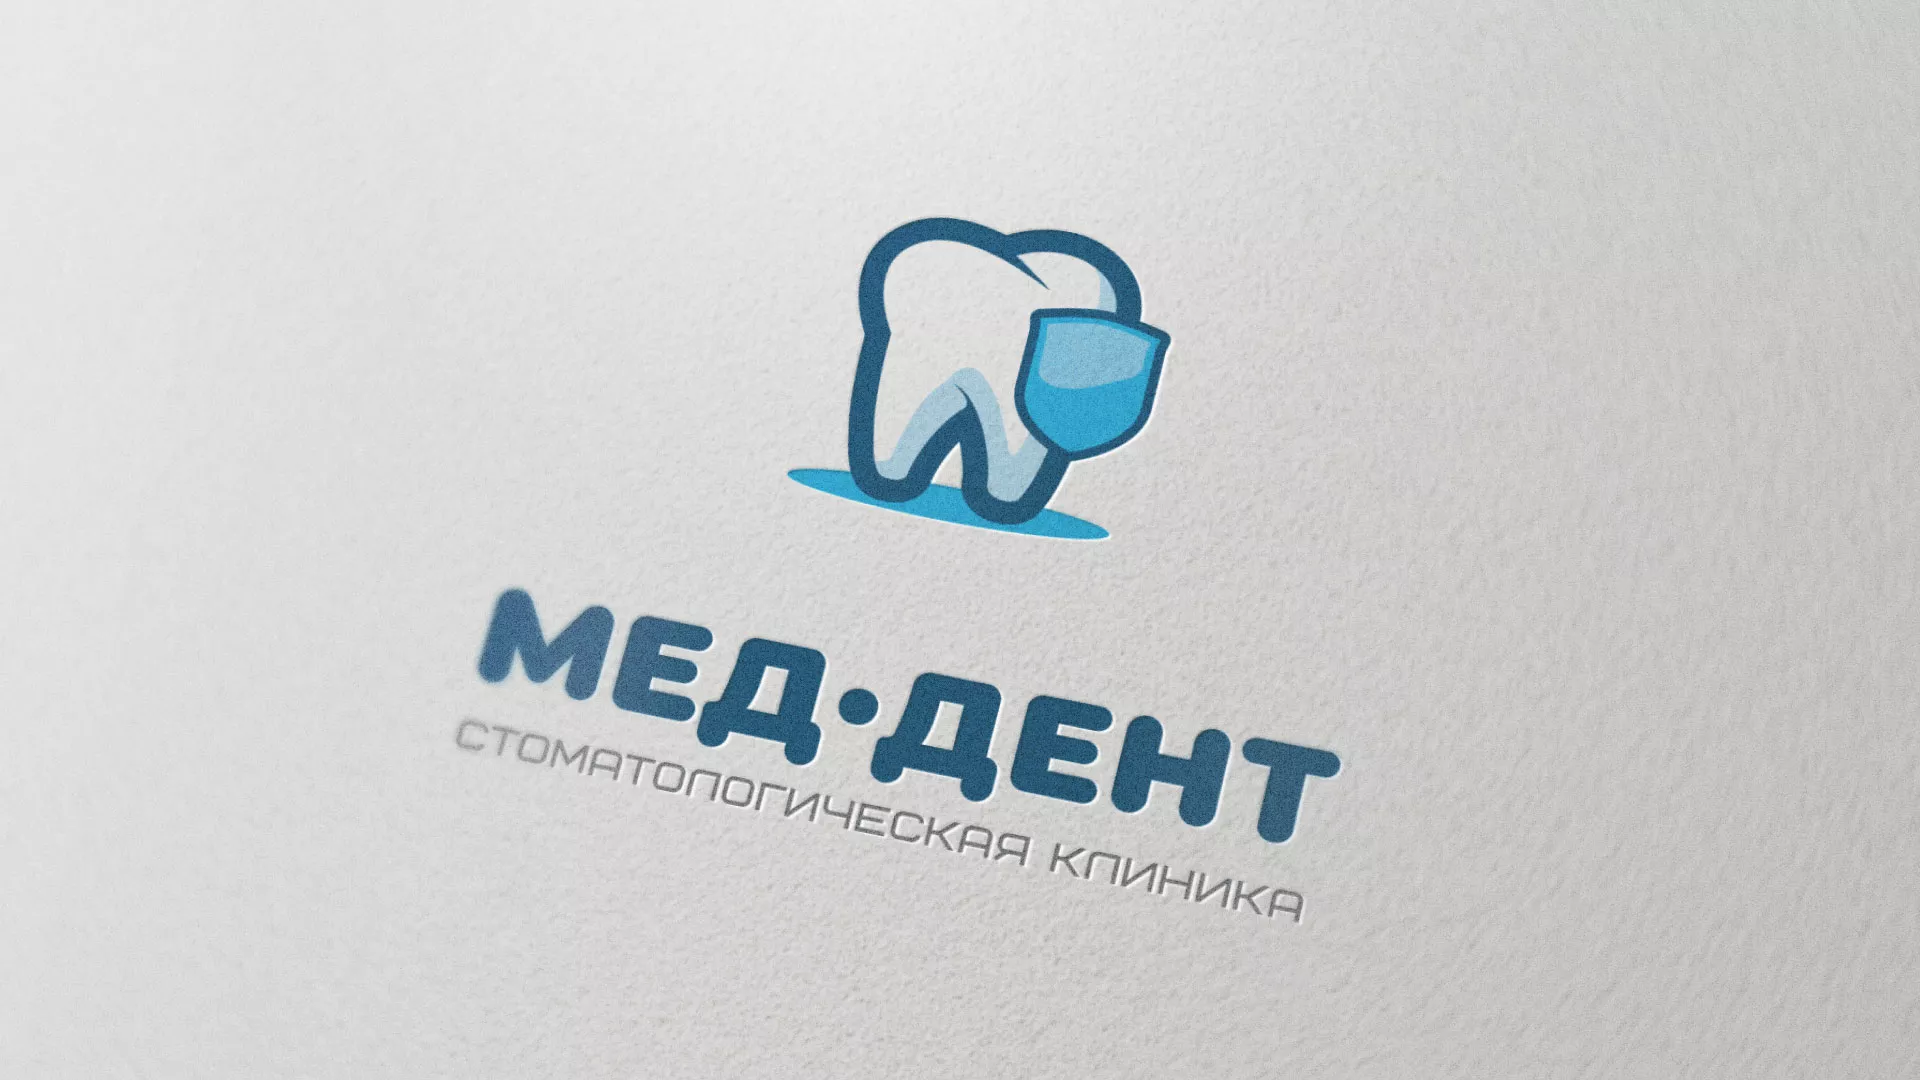 Разработка логотипа стоматологической клиники «МЕД-ДЕНТ» в Асино